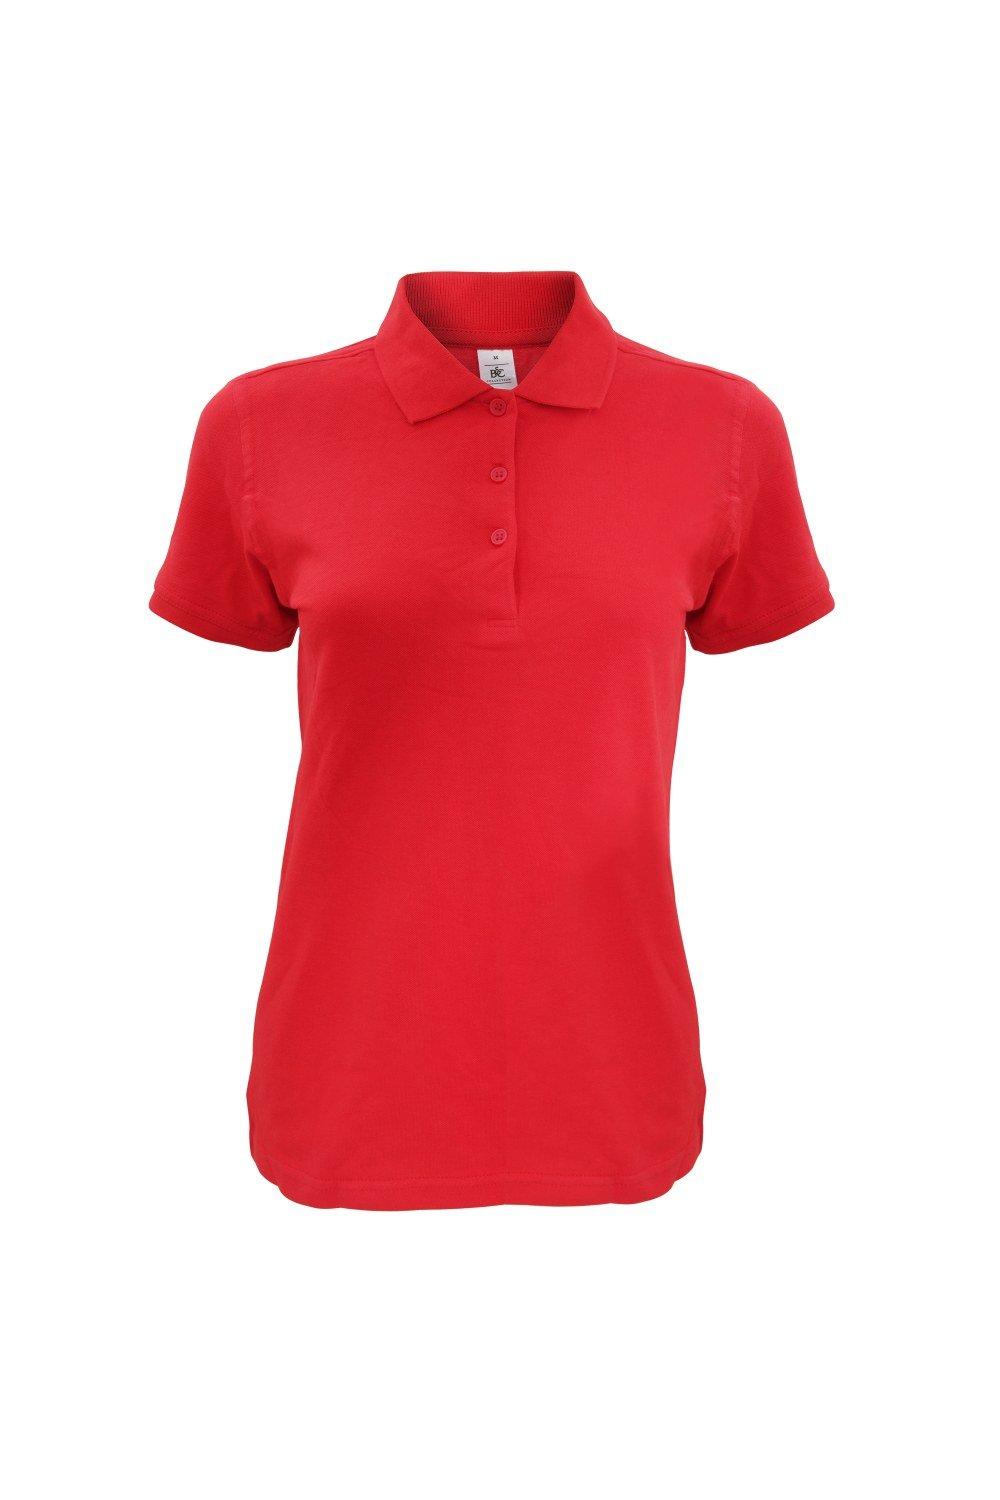 Рубашка-поло Safran Timeless B&C, красный